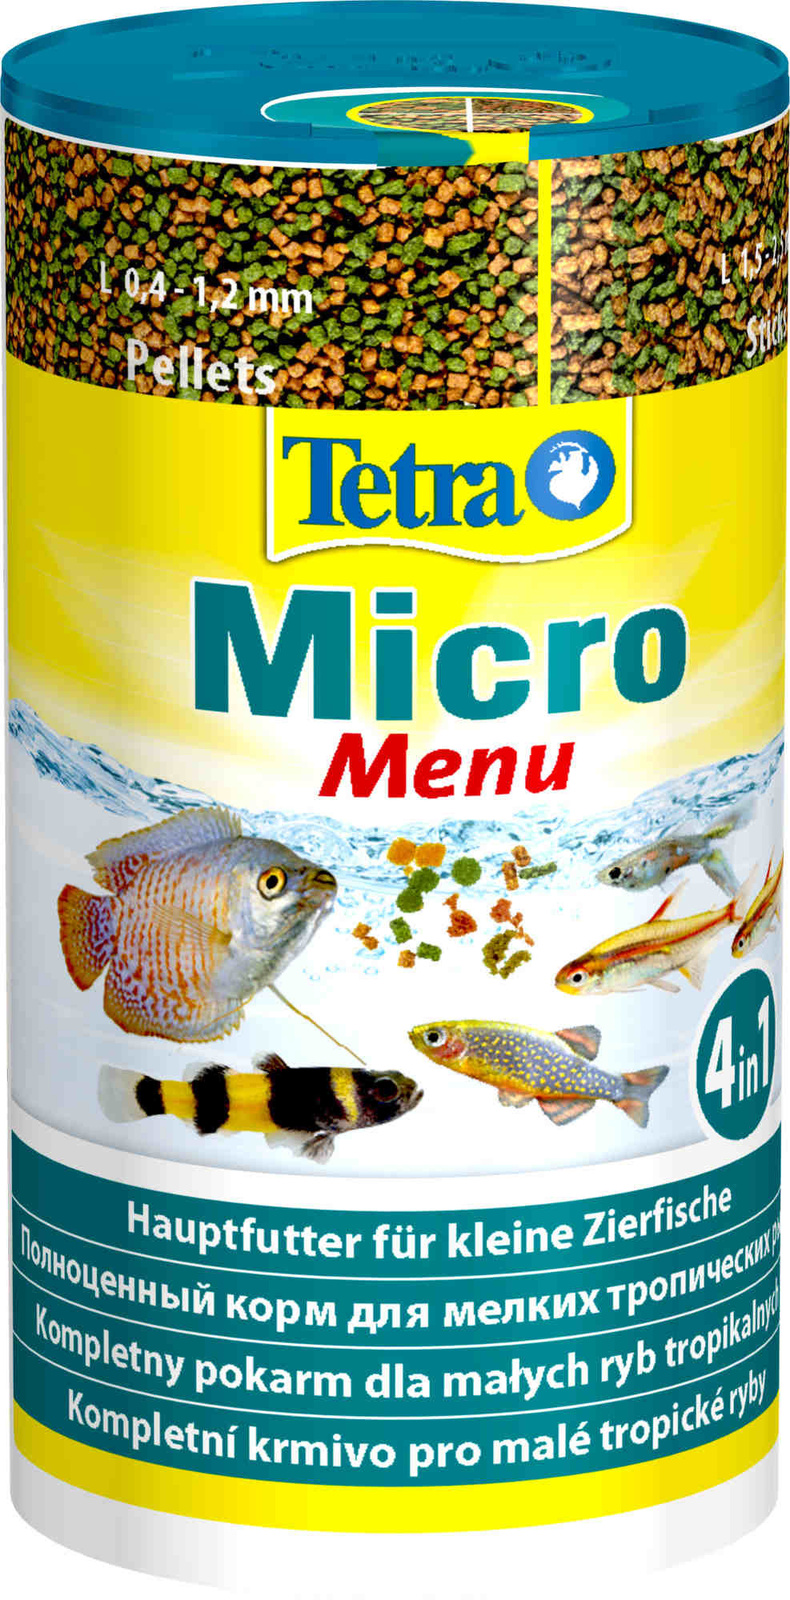 Tetra (корма) Tetra (корма) корм для всех видов мелких рыб, четыре вида корма (65 г) tetra корма tetra корма корм для всех видов мелких рыб четыре вида корма 65 г